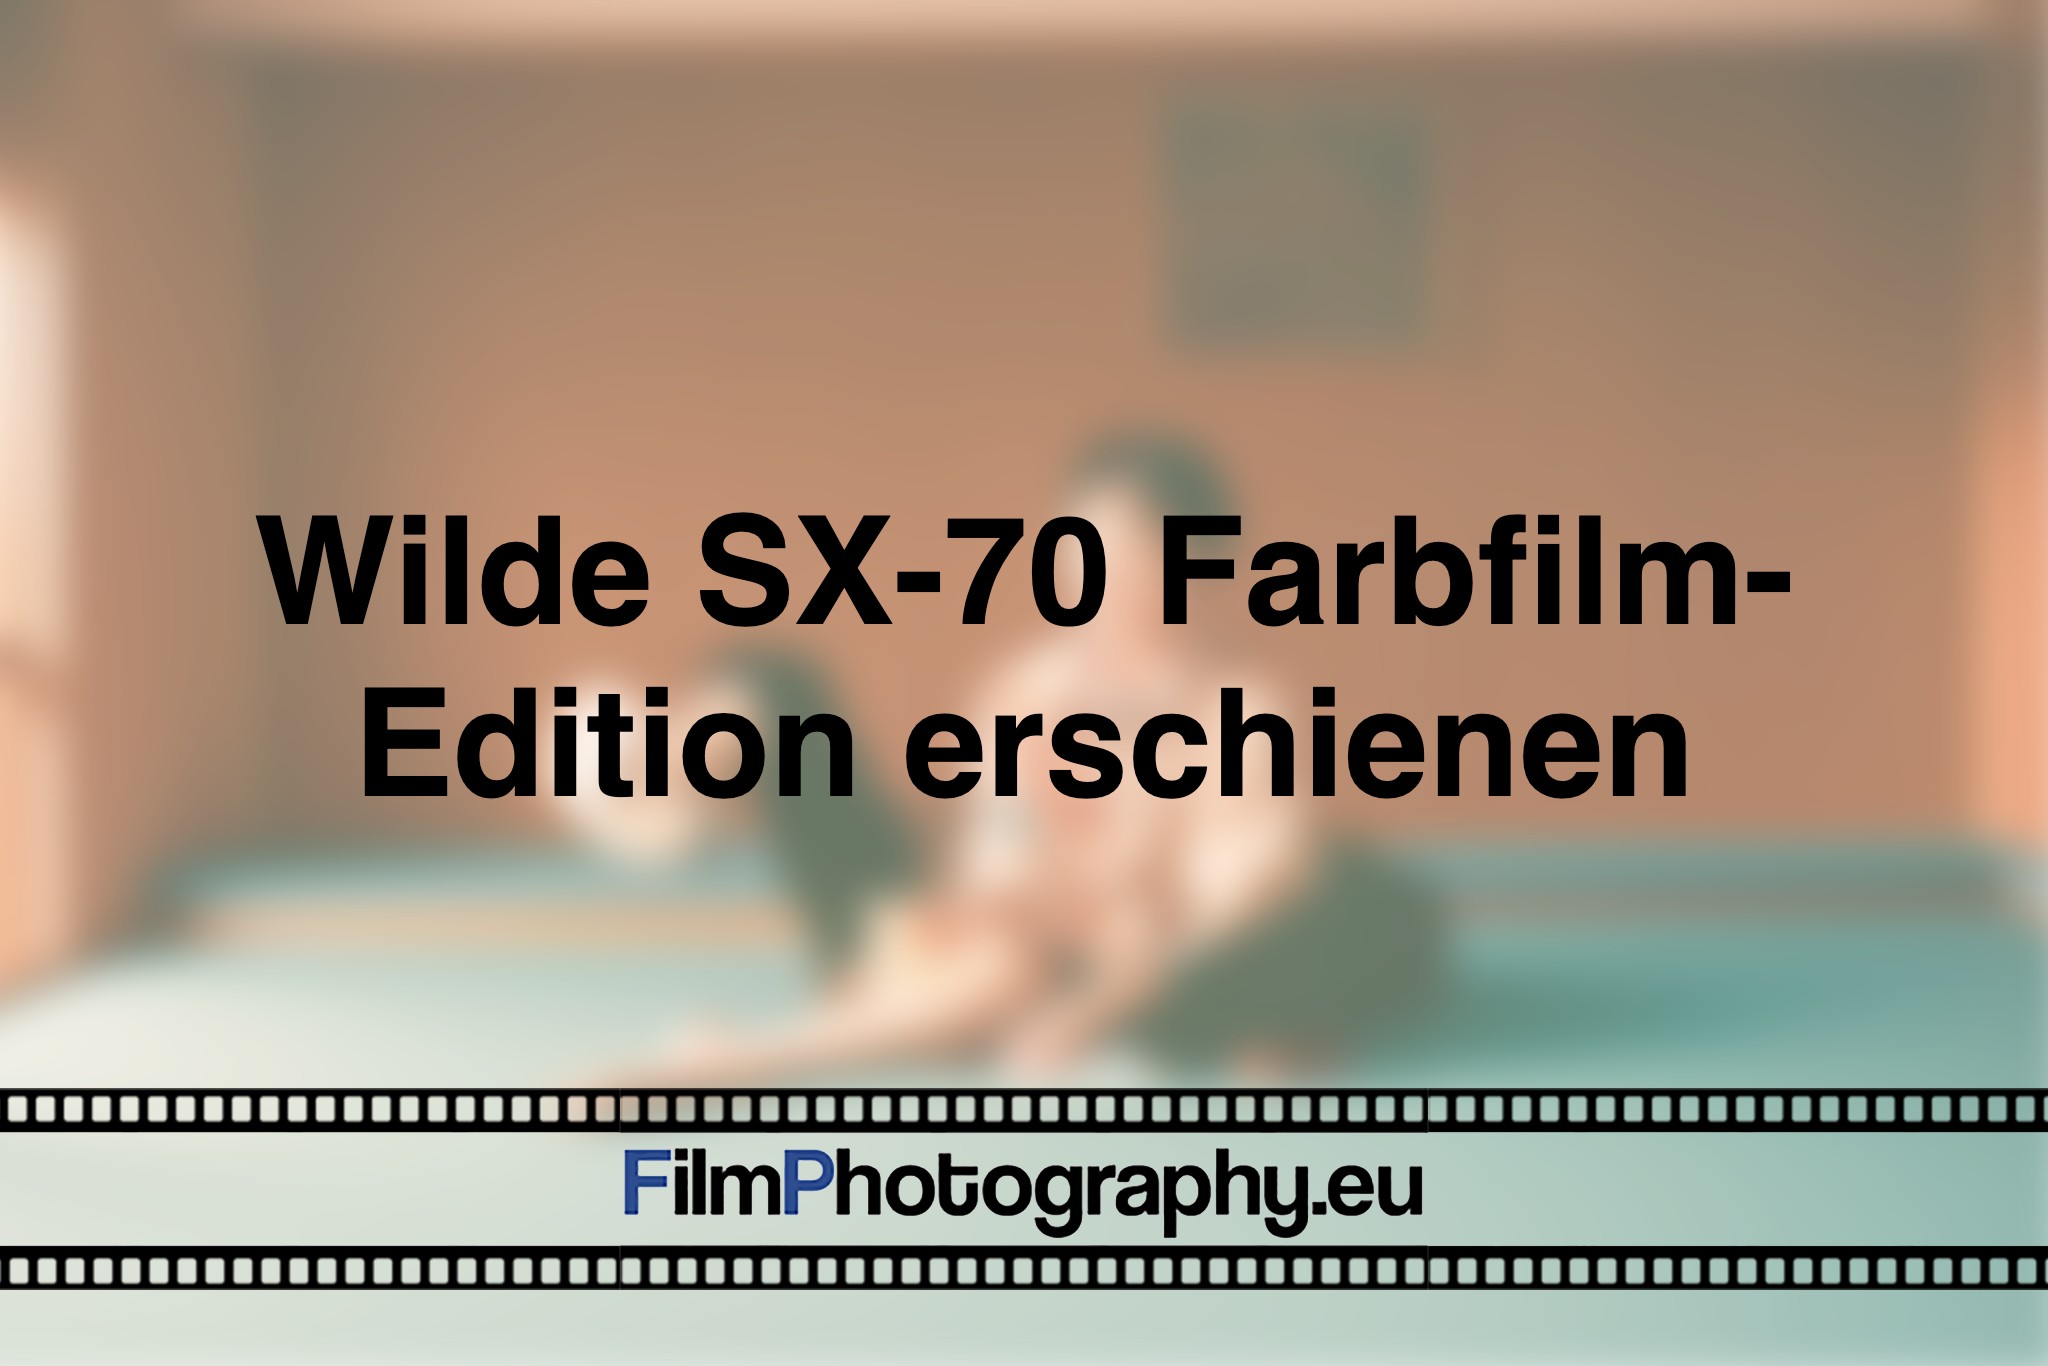 wilde-sx-70-farbfilm-edition-erschienen-photo-bnv